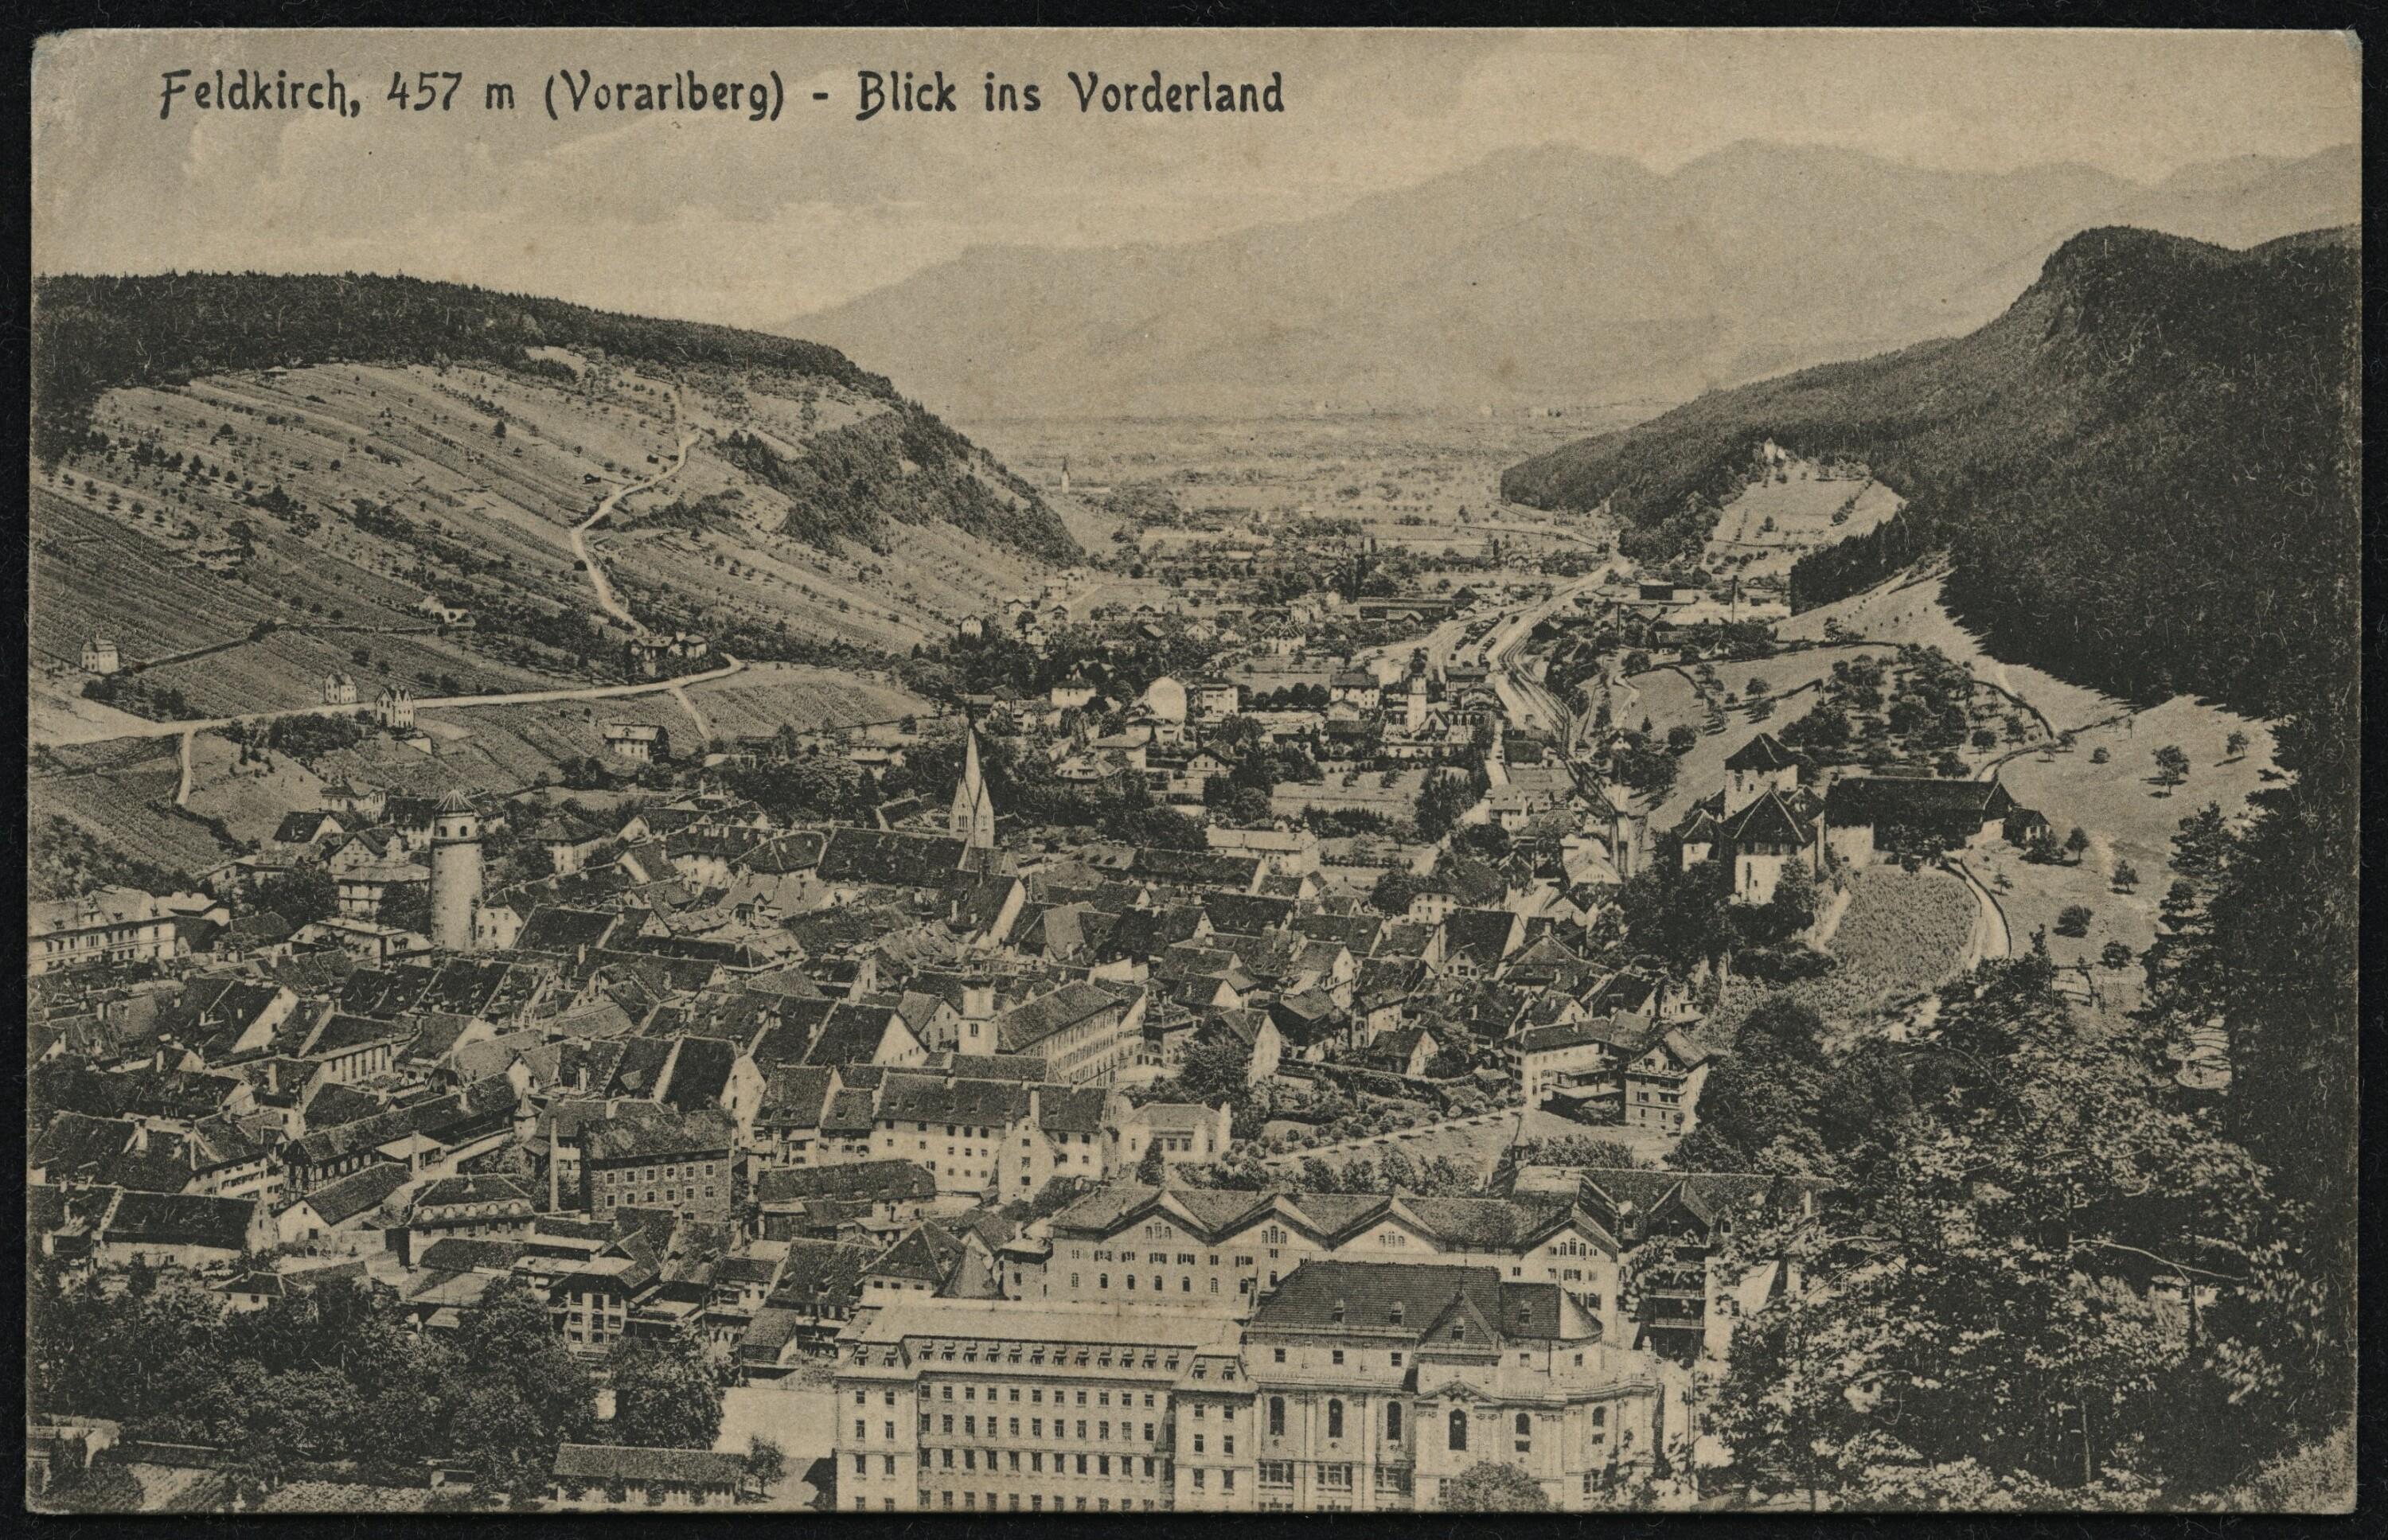 Feldkirch, 457 m (Vorarlberg) - Blick ins Vorderland></div>


    <hr>
    <div class=